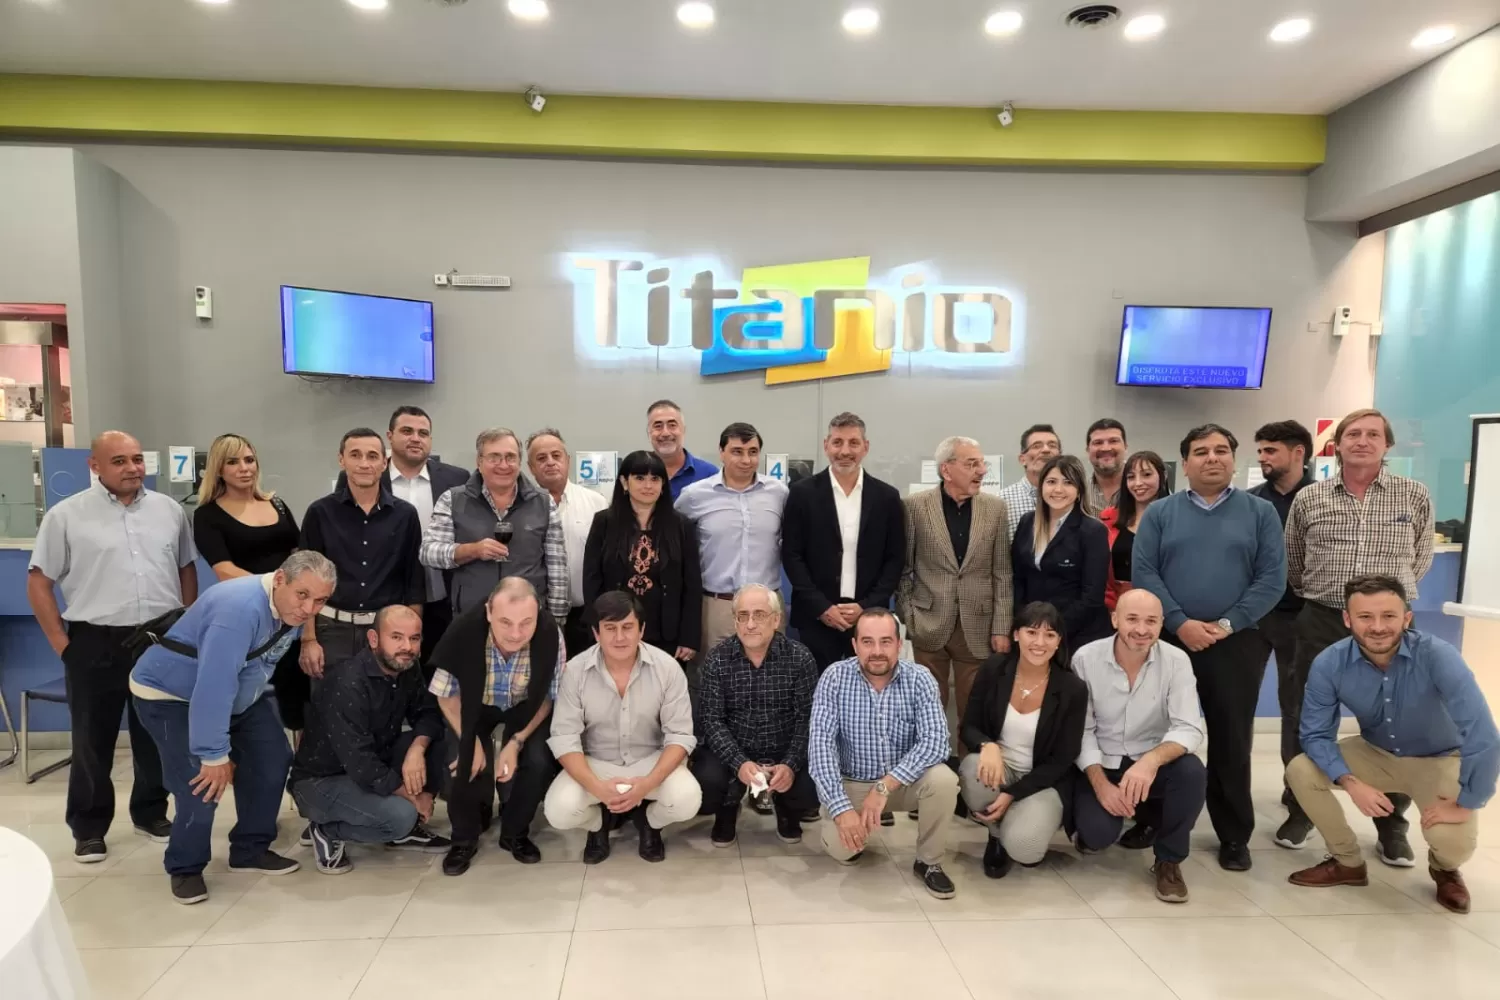 Tarjeta Titanio lanza un nuevo servicio exclusivo para sus clientes